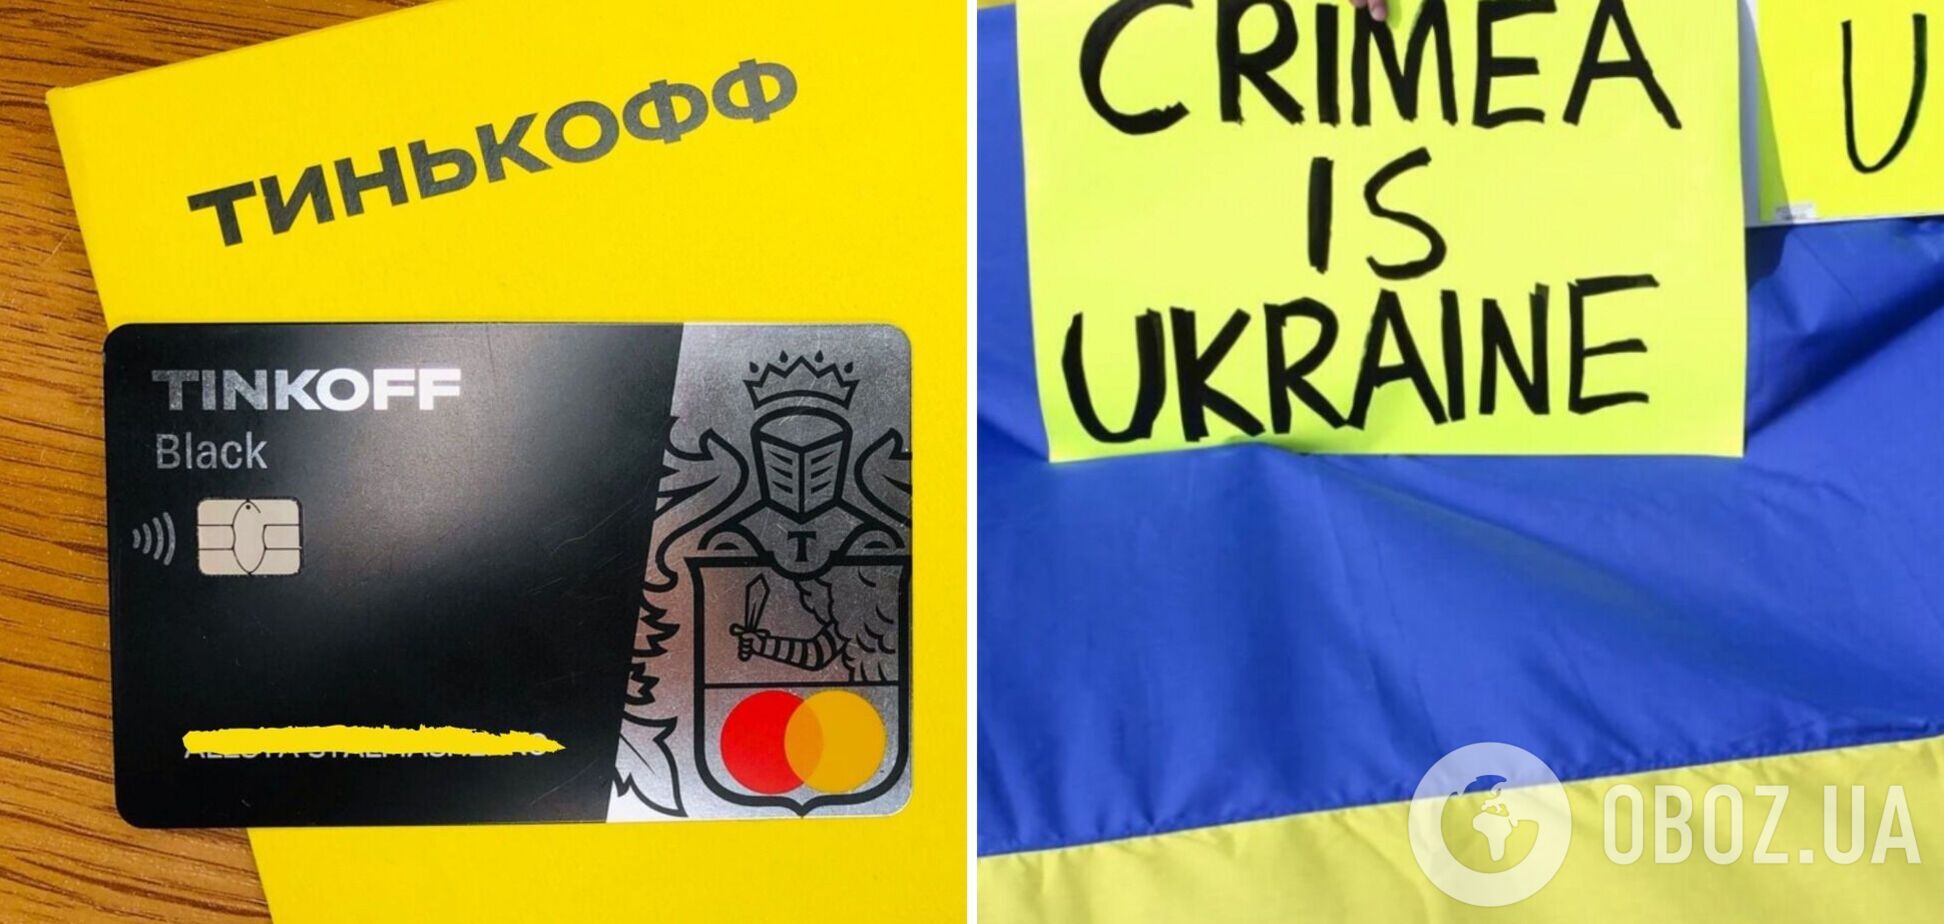 'Тикофф банк' косвенно признал Крым украинским